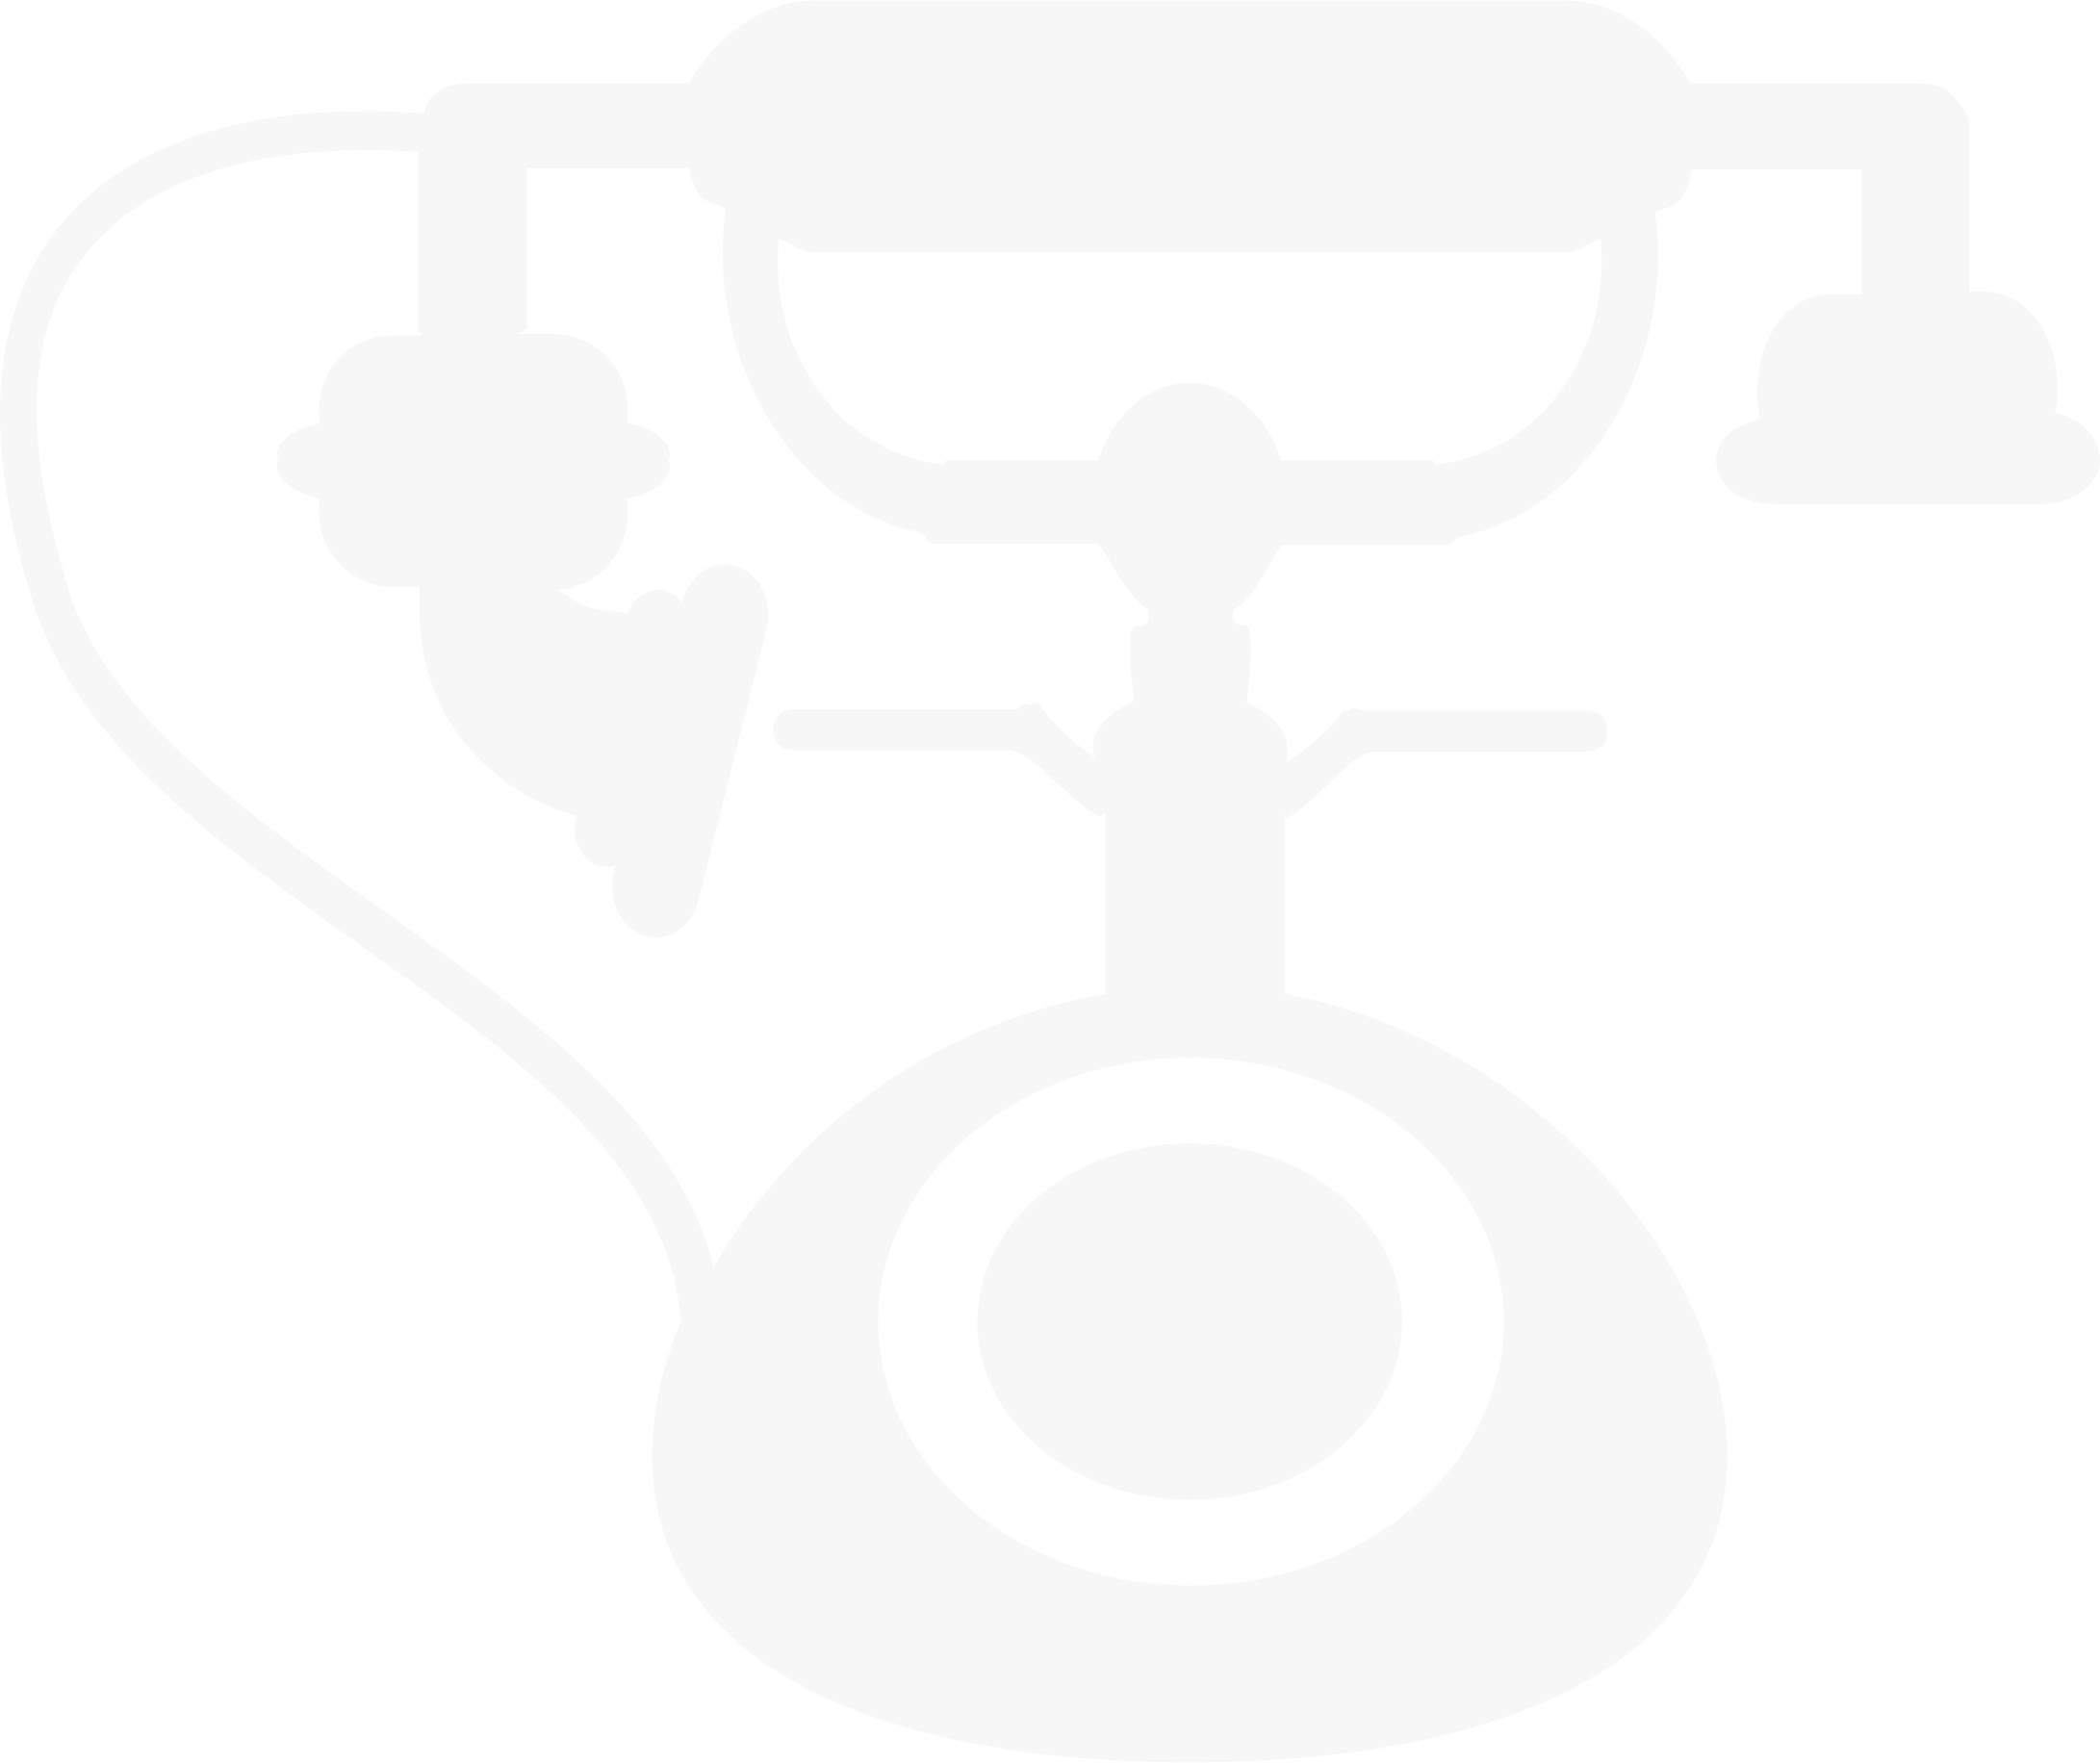 White Telephone Logo - Free White Telephone Icon Png 227455. Download White Telephone Icon